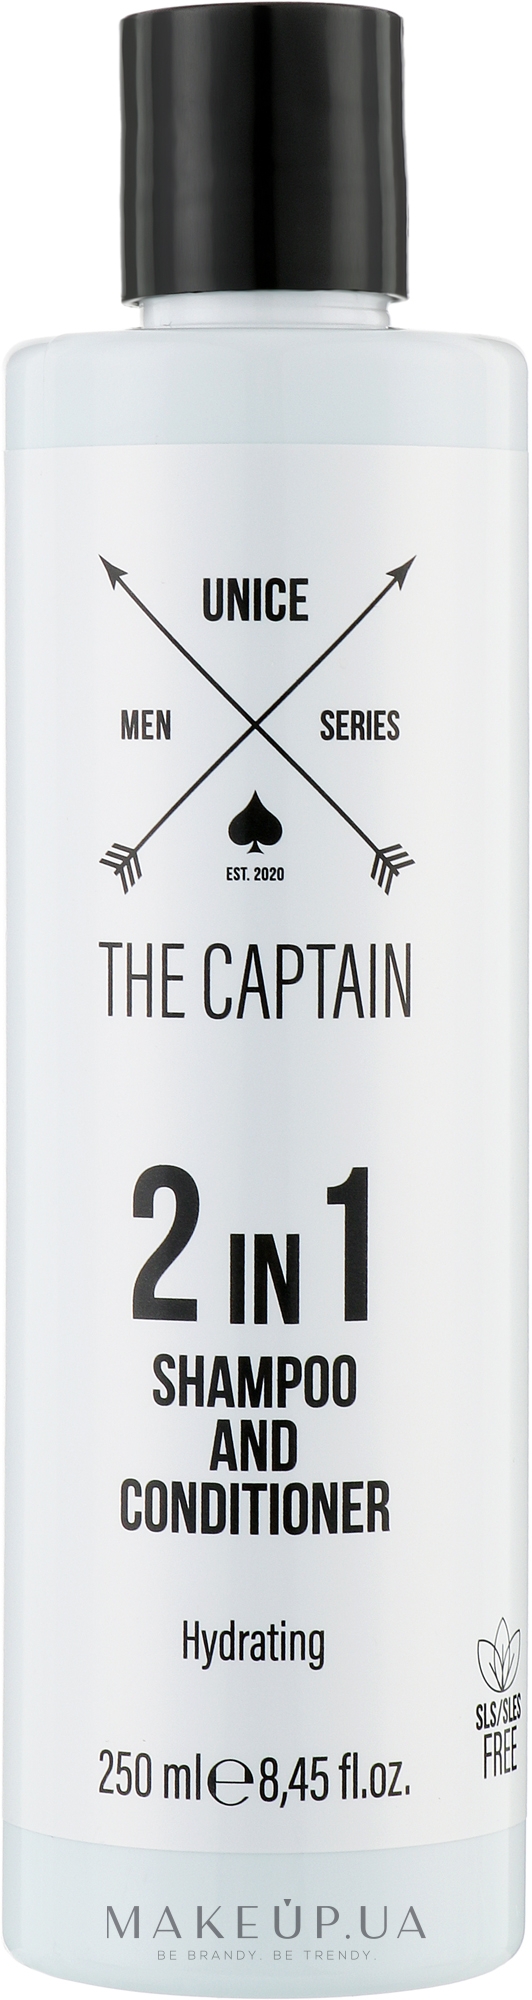 Безсульфатний шампунь-кондиціонер 2 в 1 для чоловіків - Unice The Captain Shampoo&Conditioner — фото 250ml